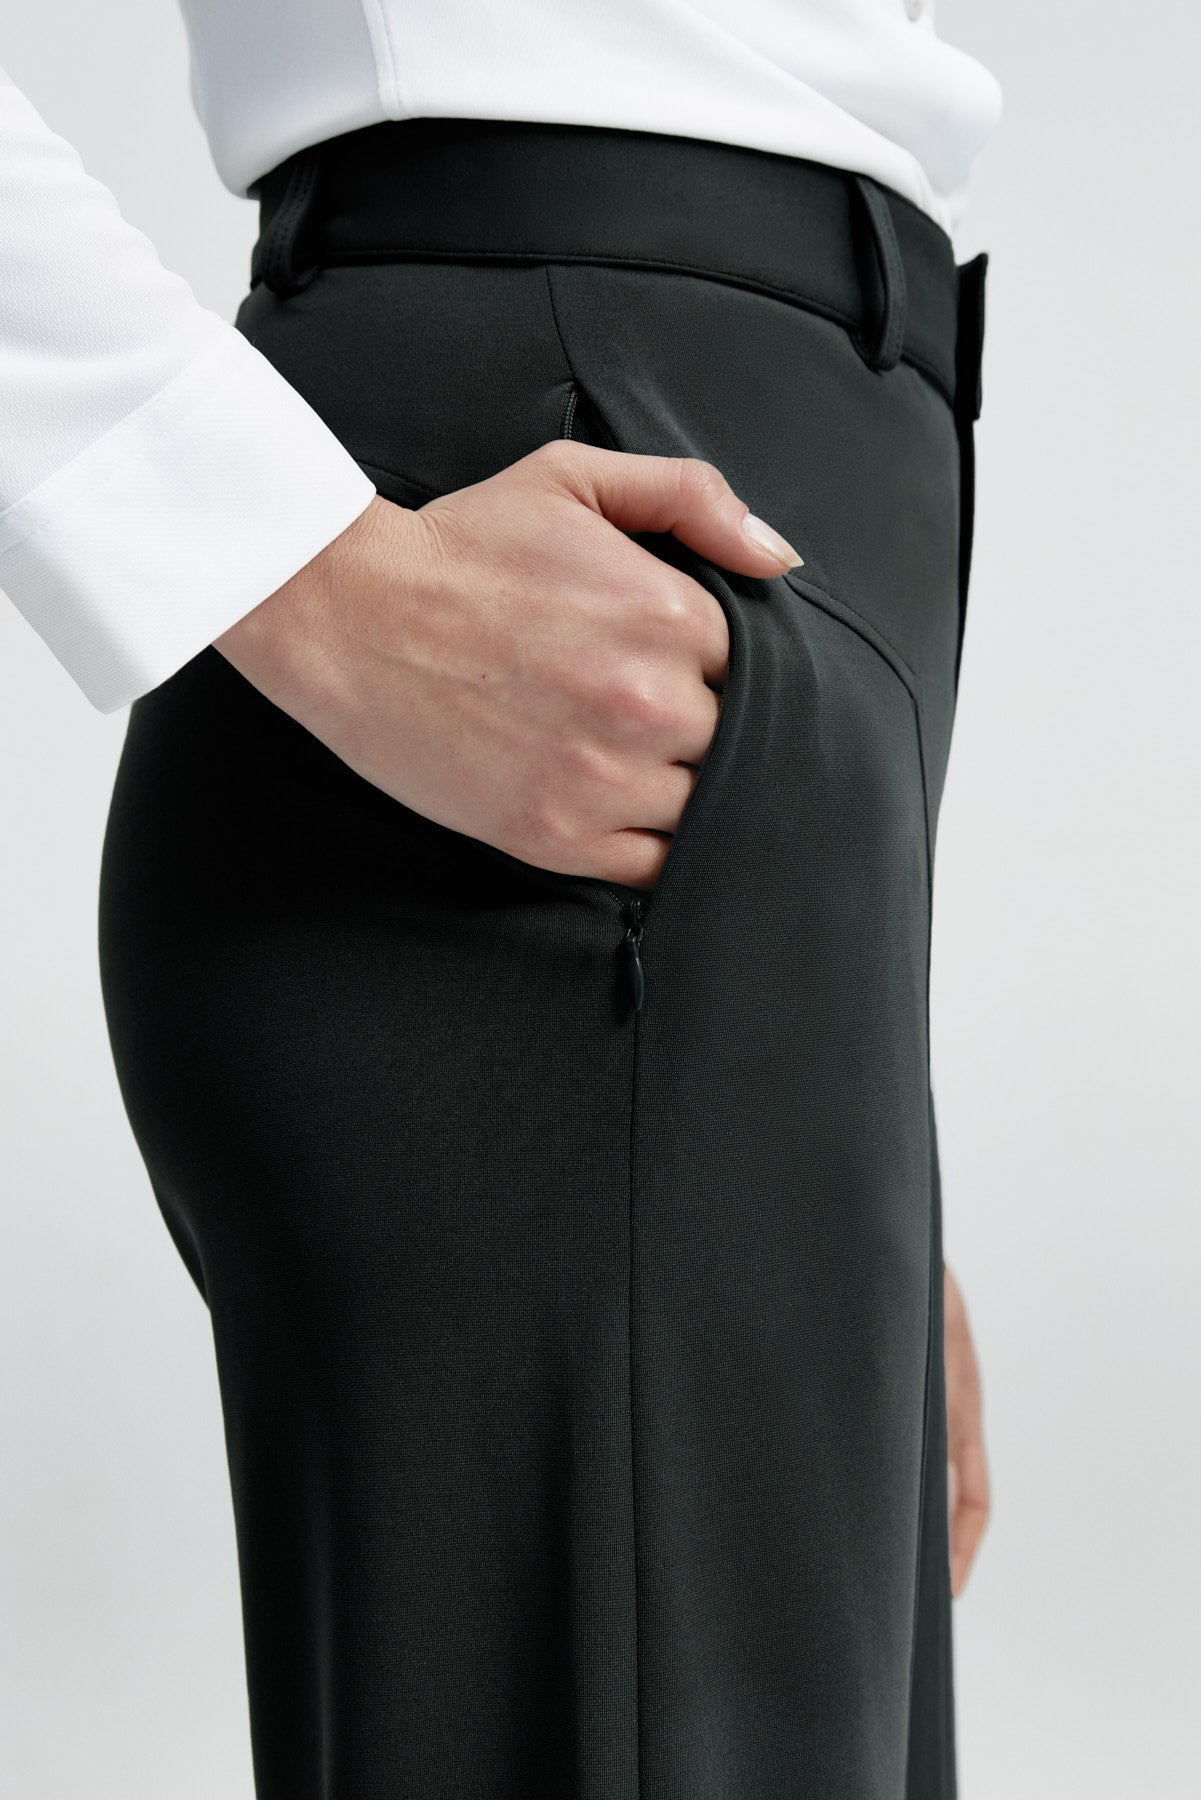 Pantalón de mujer negro de Sepiia, versátil y elegante, resistente a manchas y olores. Foto retrato